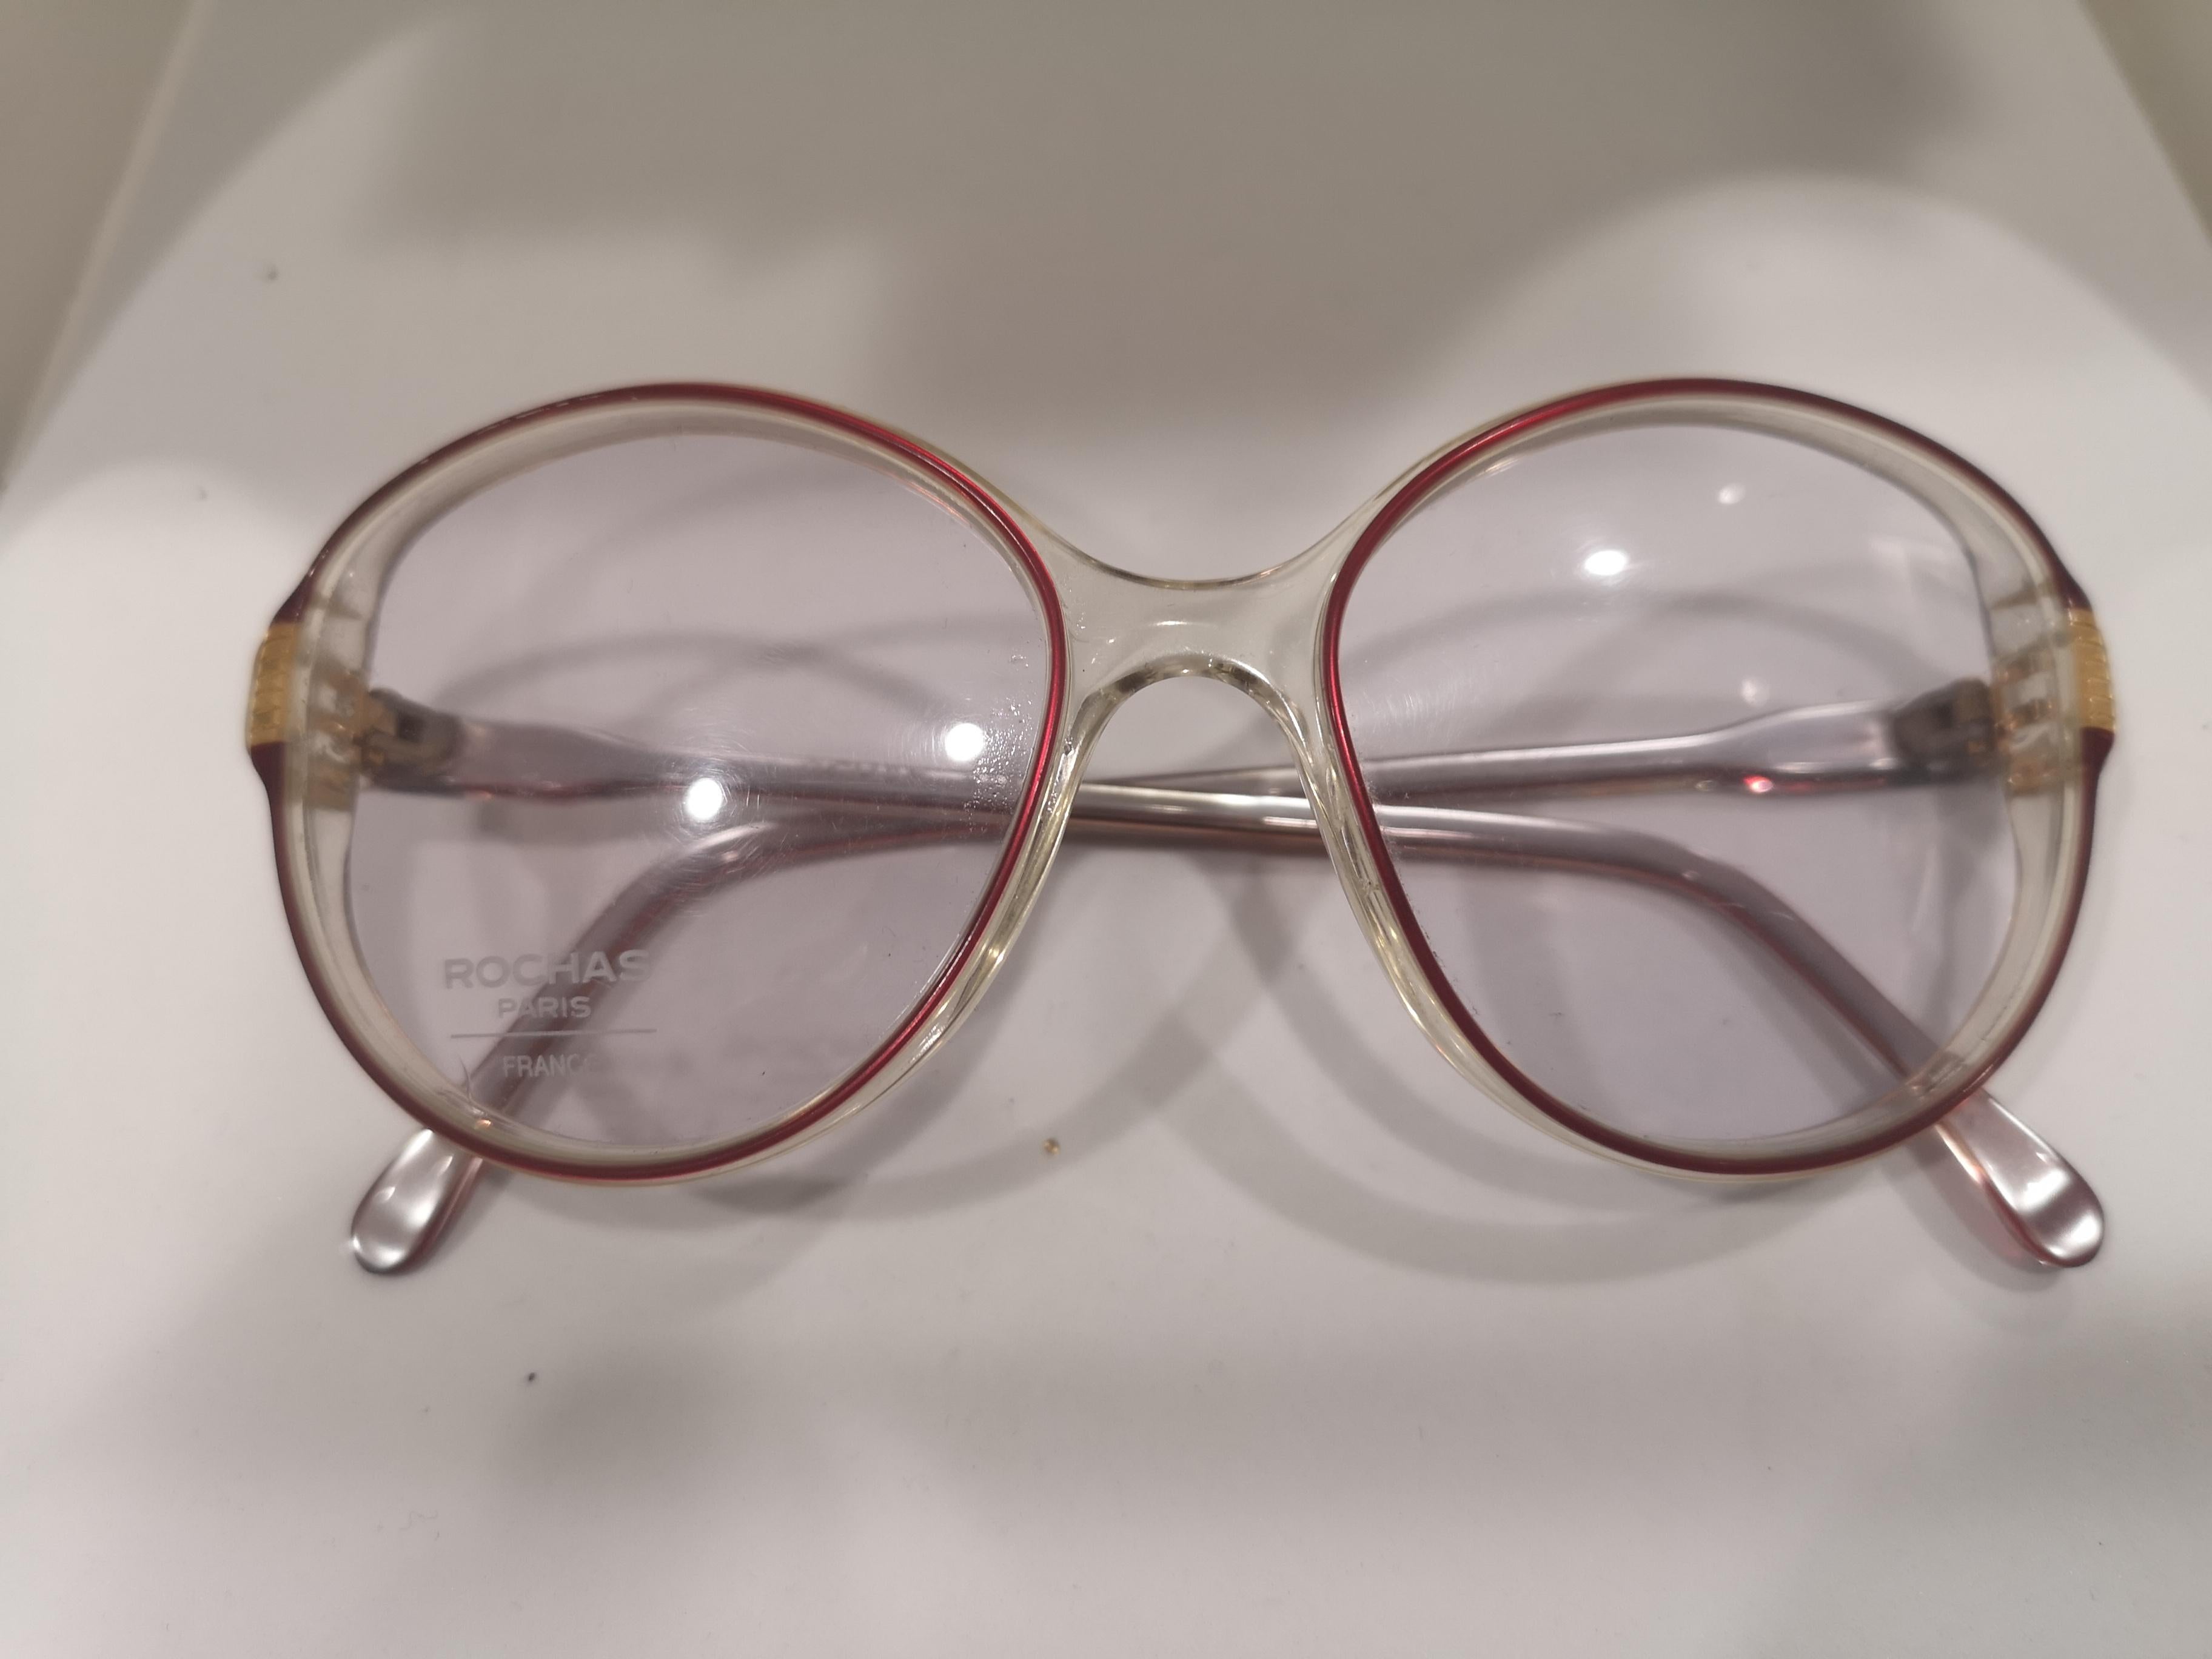 Gray Rochas frame glasses For Sale